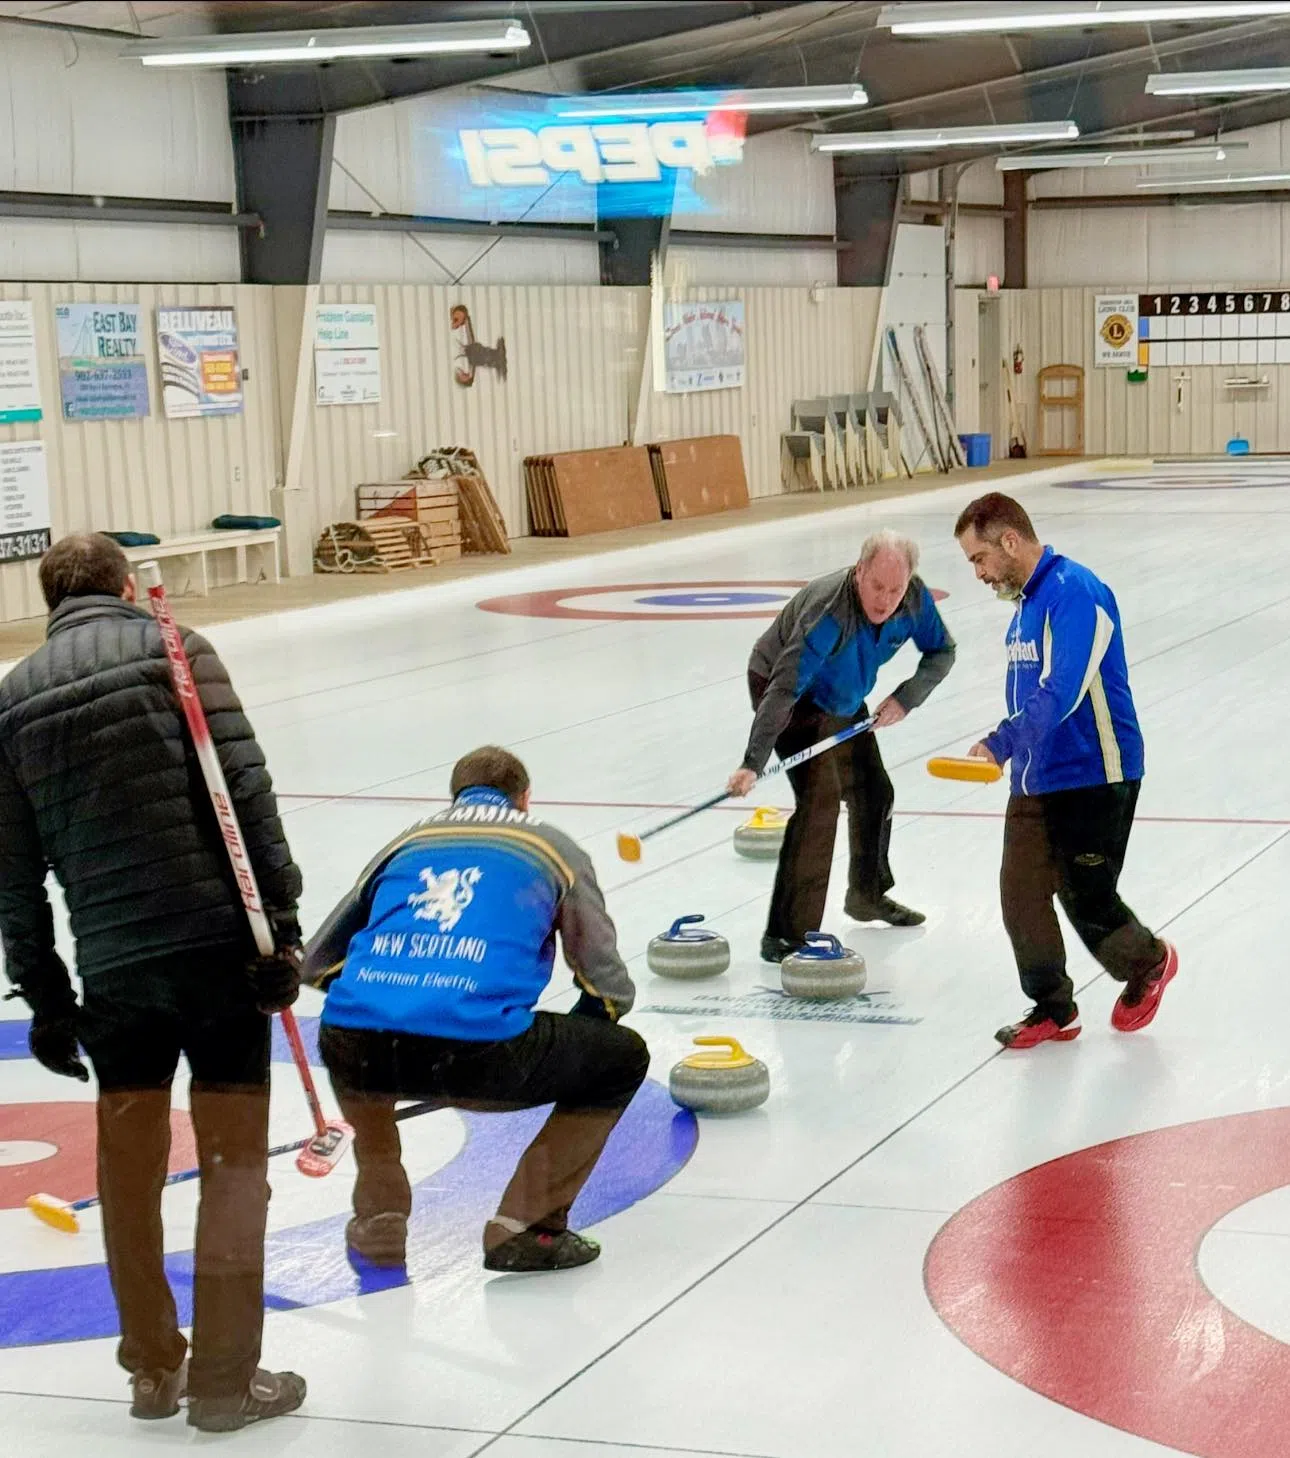 Flemming's N.S. team wins world senior men's curling championship